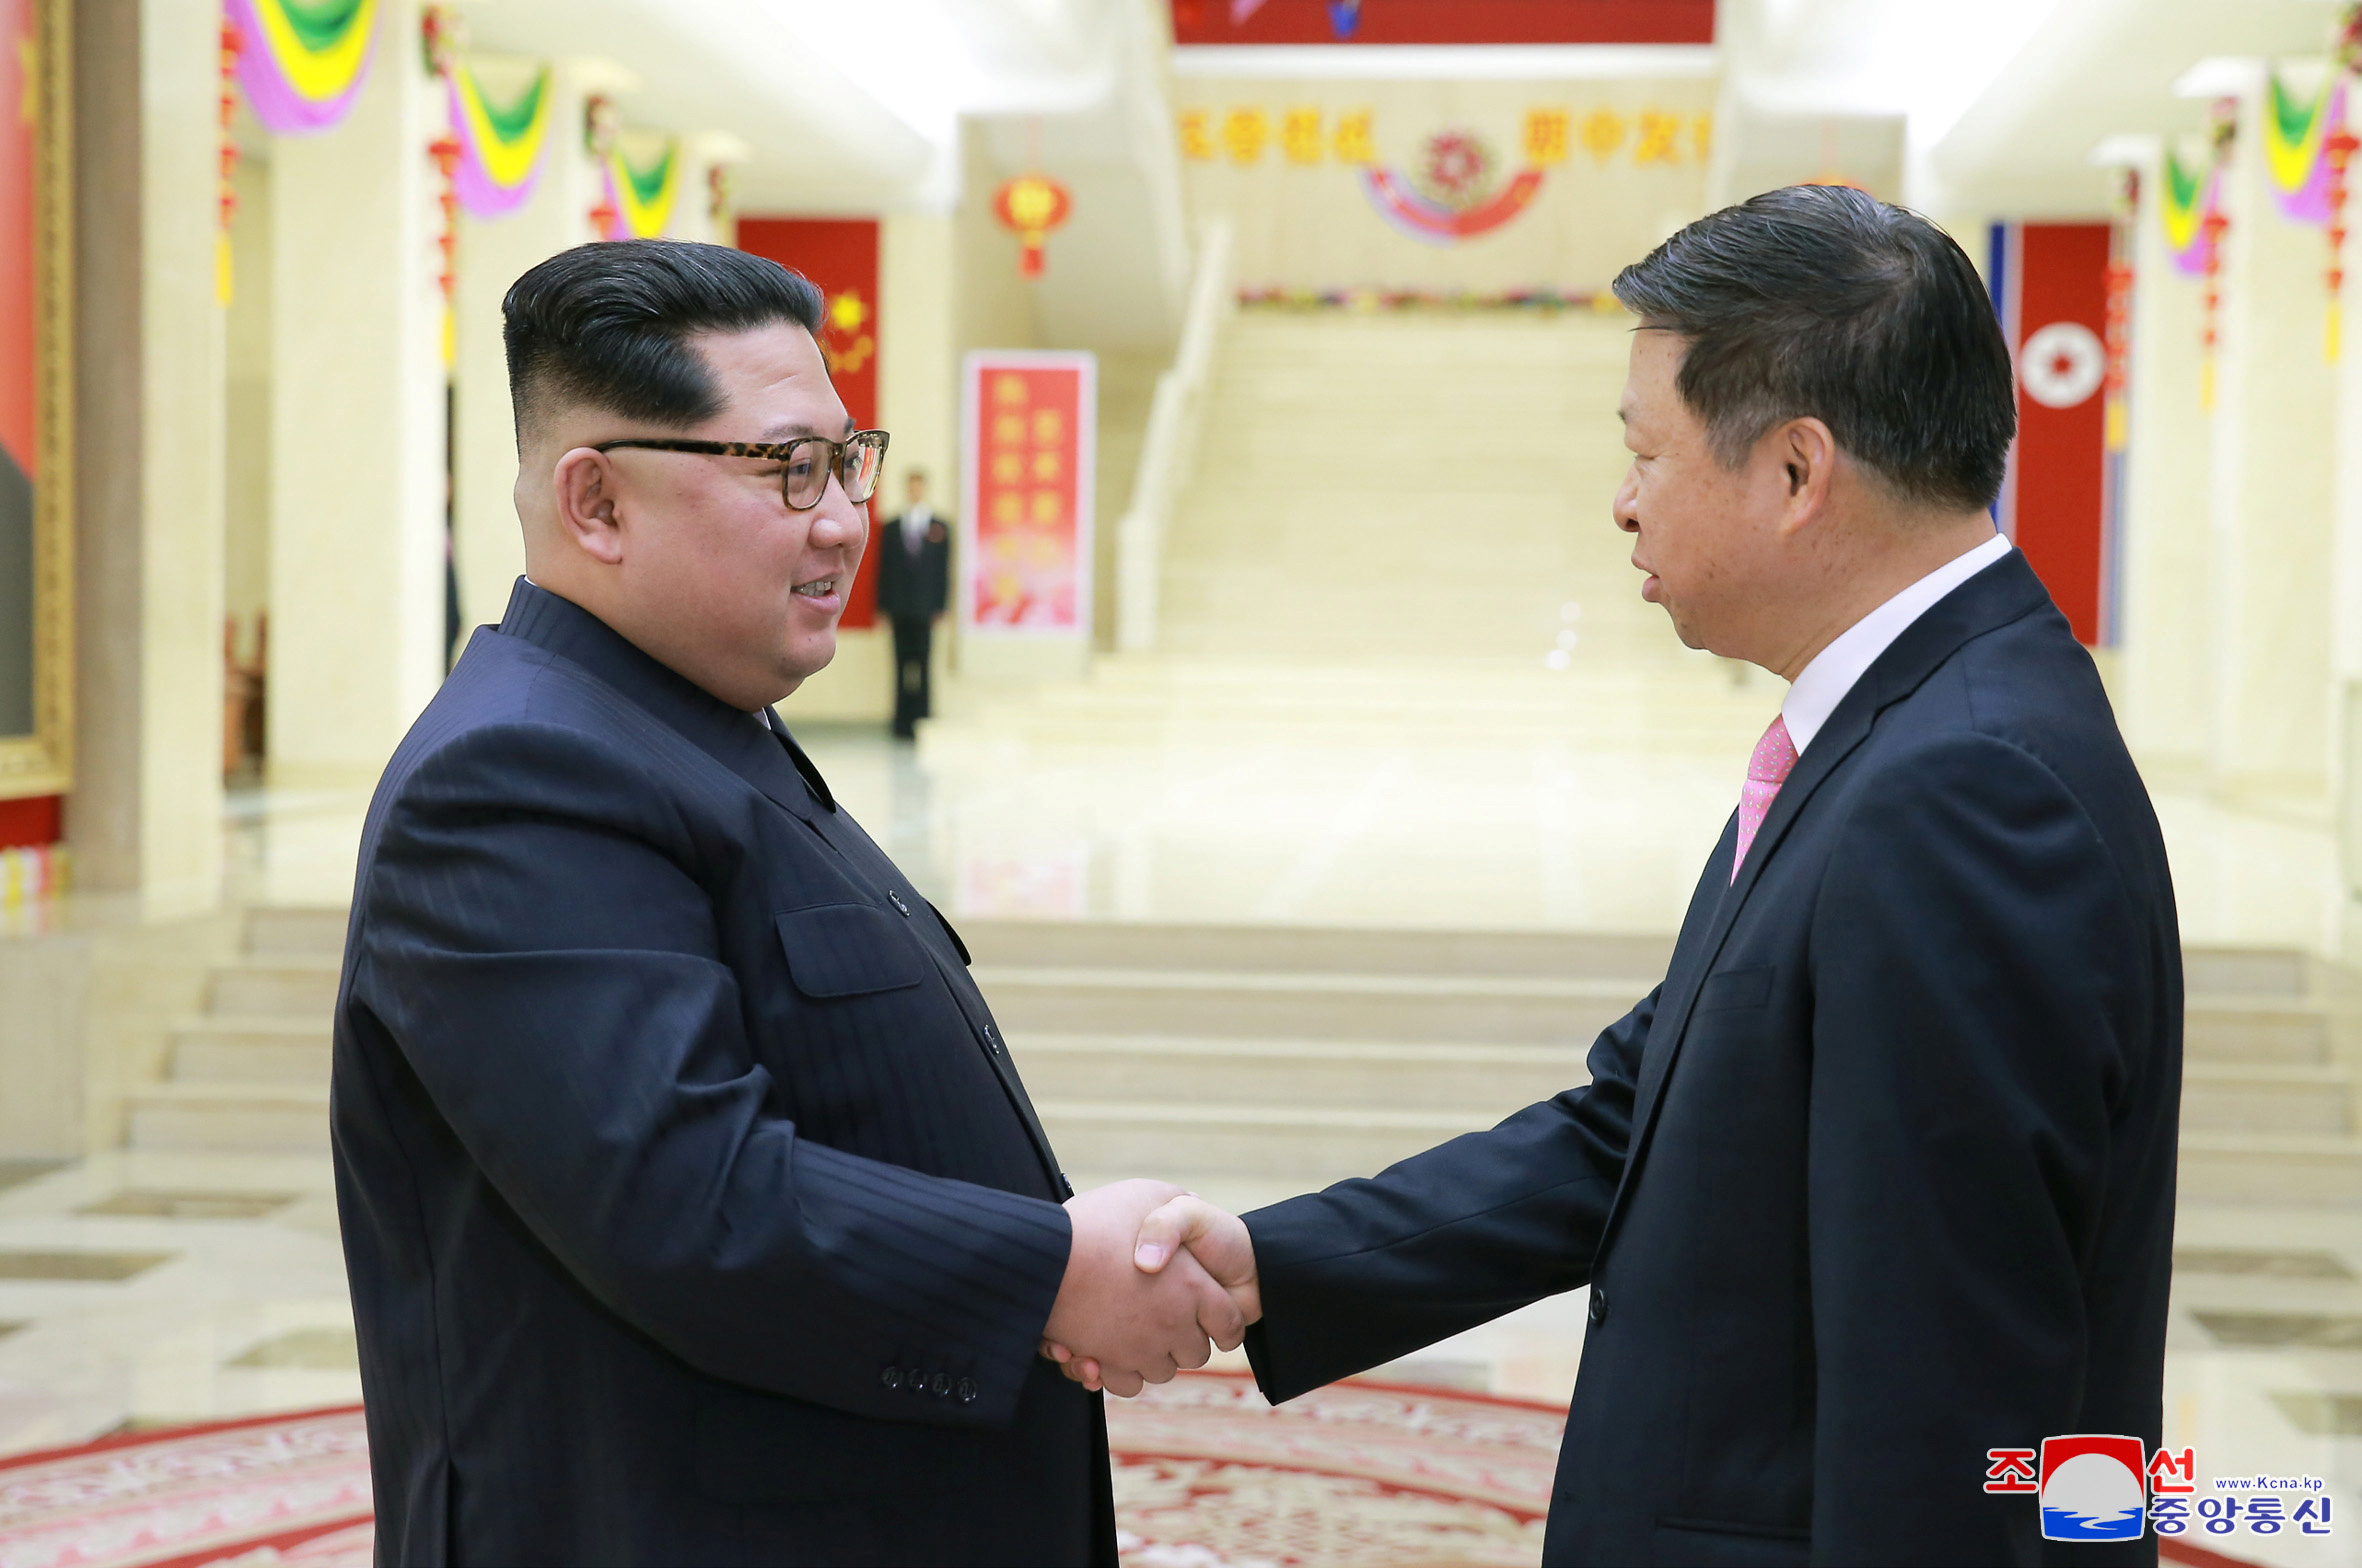 783965-زعيم-كوريا-الشمالية-يلتقى-مسئول-بالحزب-الشيوعى.JPG